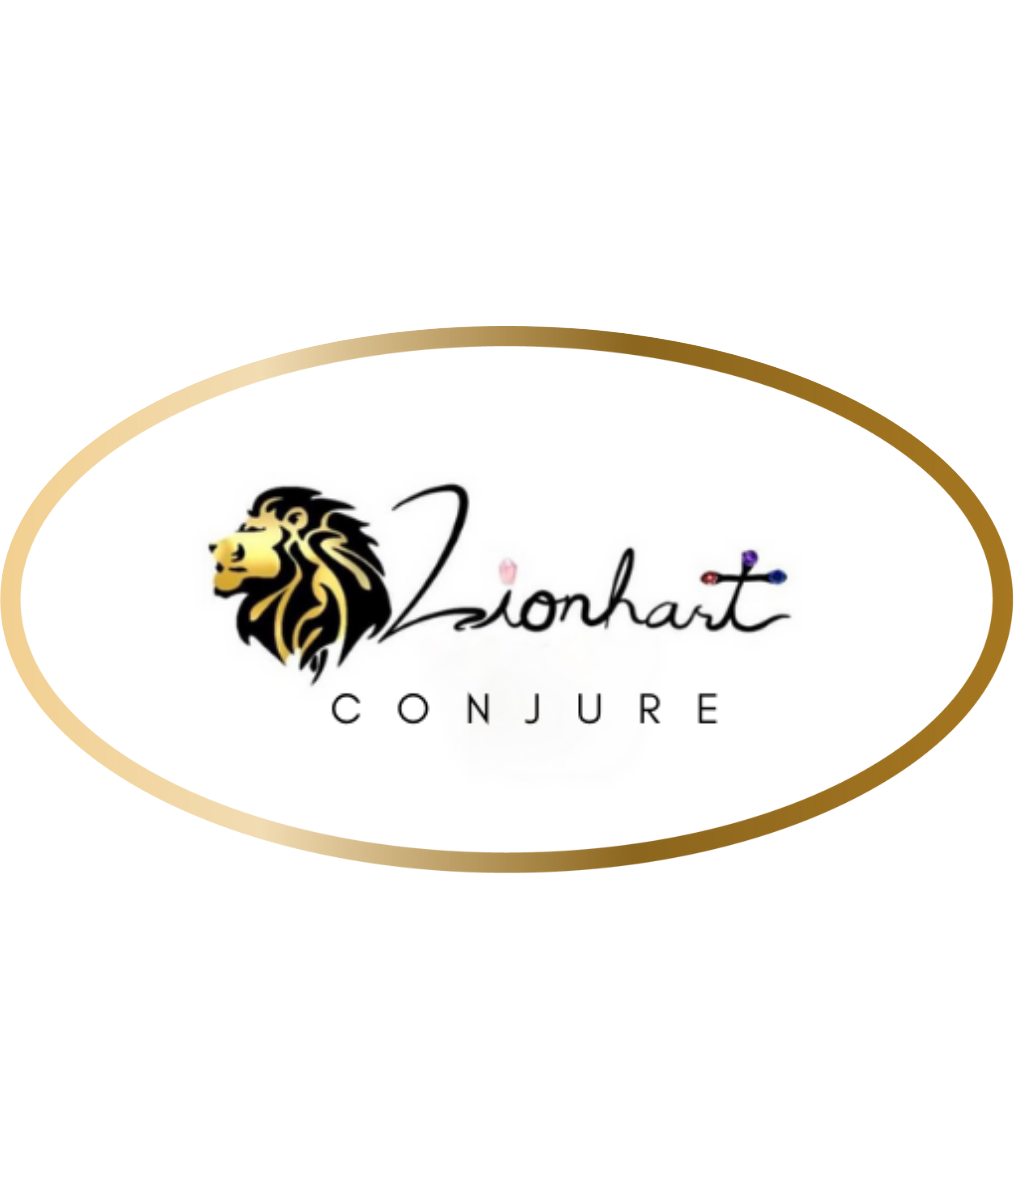 Lionhart Conjure